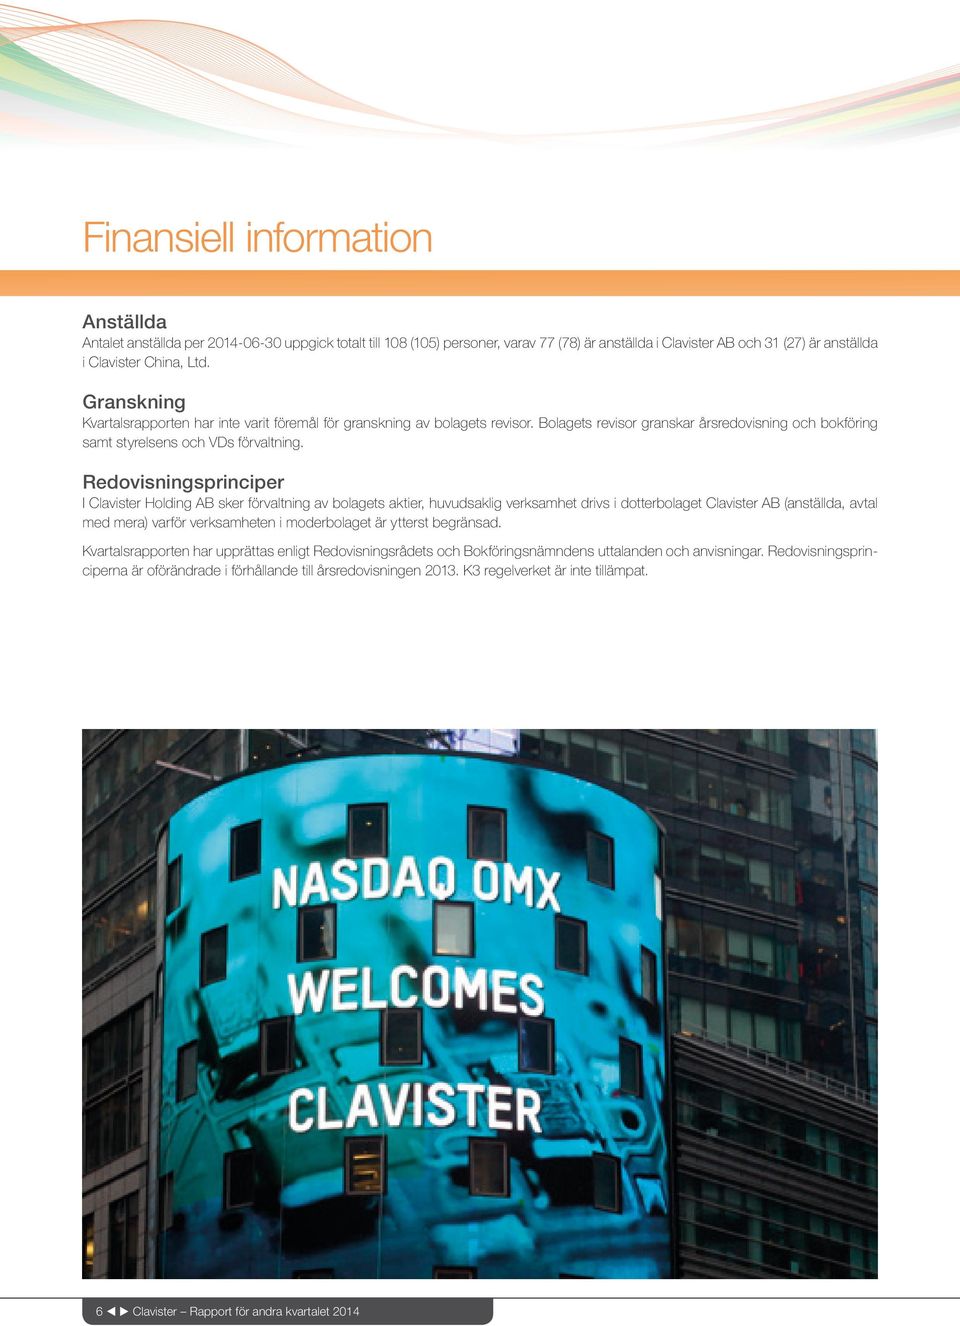 Redovisningsprinciper I Clavister Holding AB sker förvaltning av bolagets aktier, huvudsaklig verksamhet drivs i dotterbolaget Clavister AB (anställda, avtal med mera) varför verksamheten i